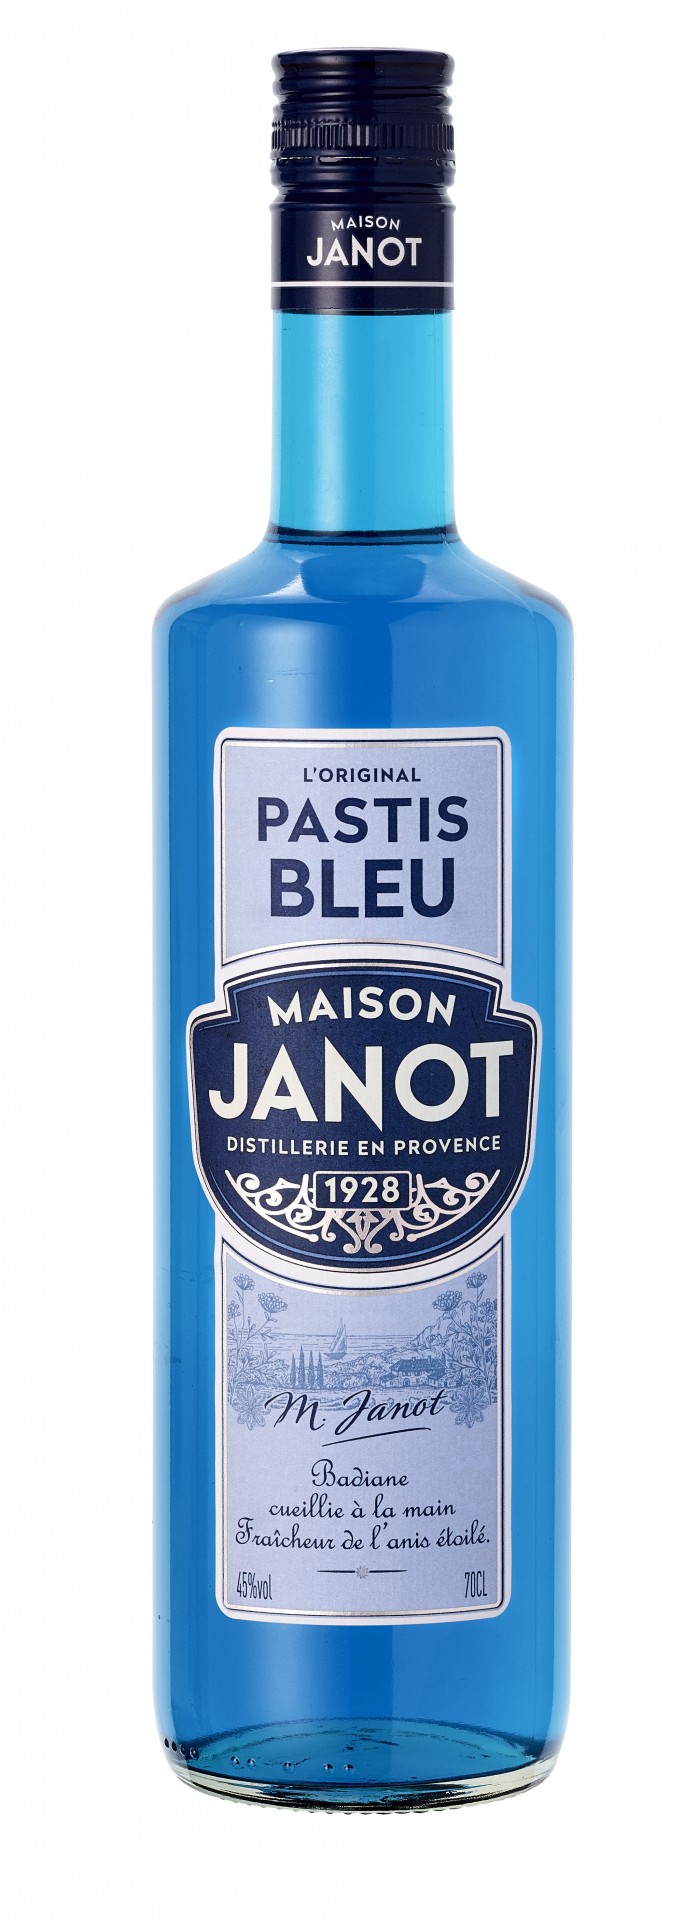 Pastis bleu Janot 70cl